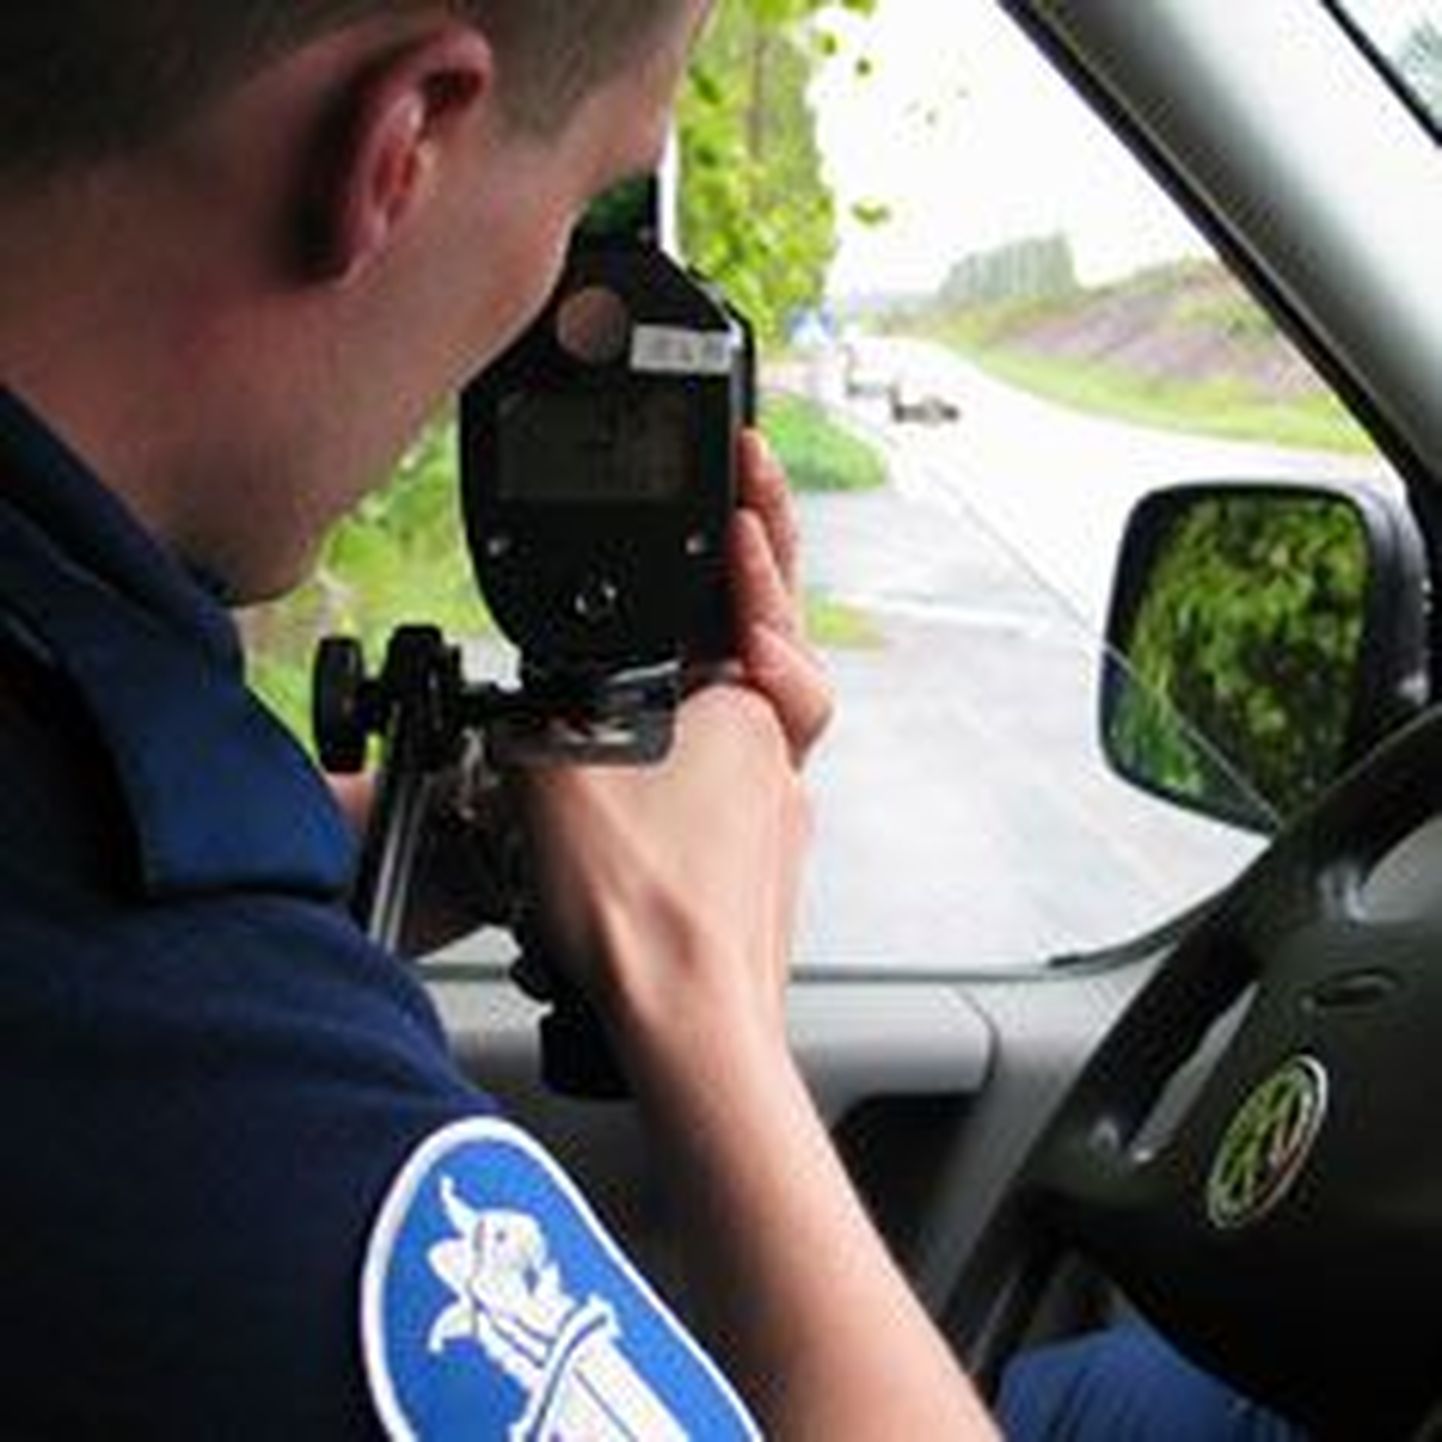 Soome politsei mõõdab kiirust.